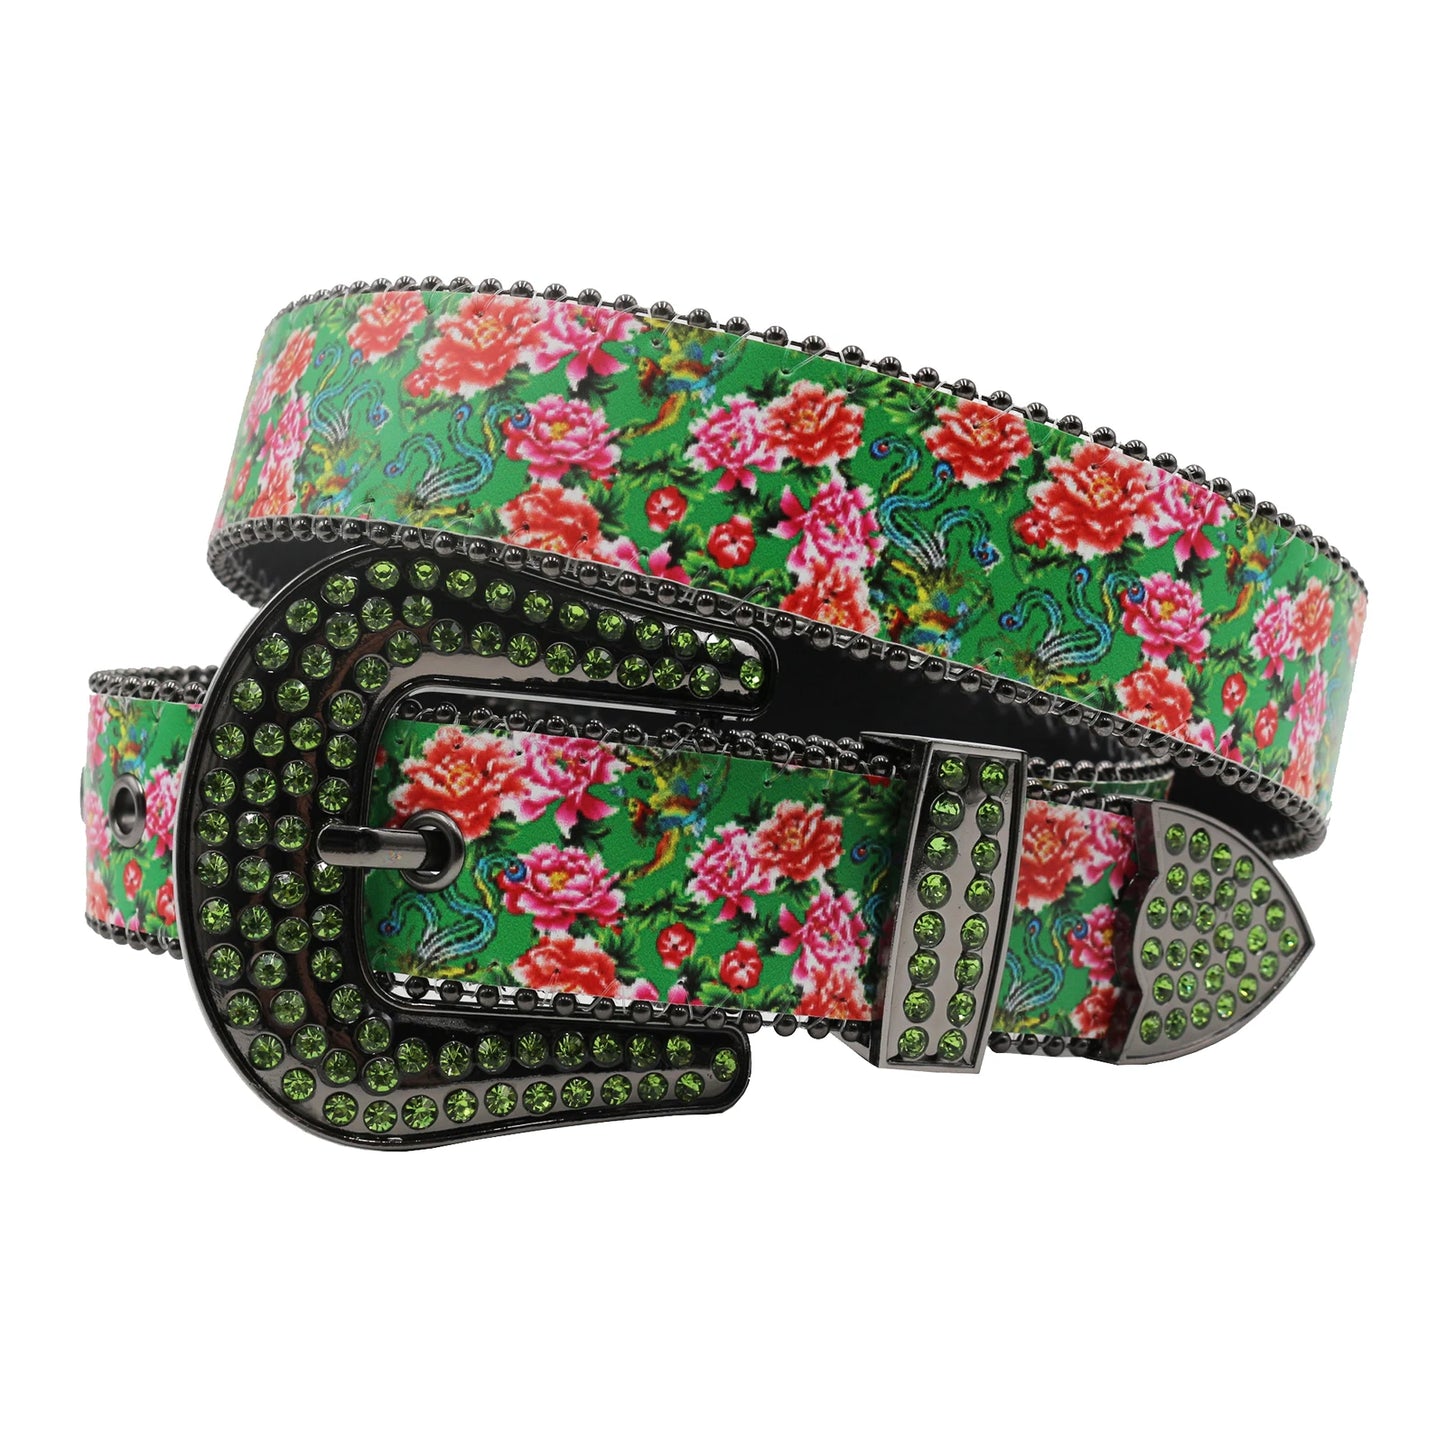 TEEK - Flower Print Belts BELT theteekdotcom MDH-Green 105cm/41.34in 